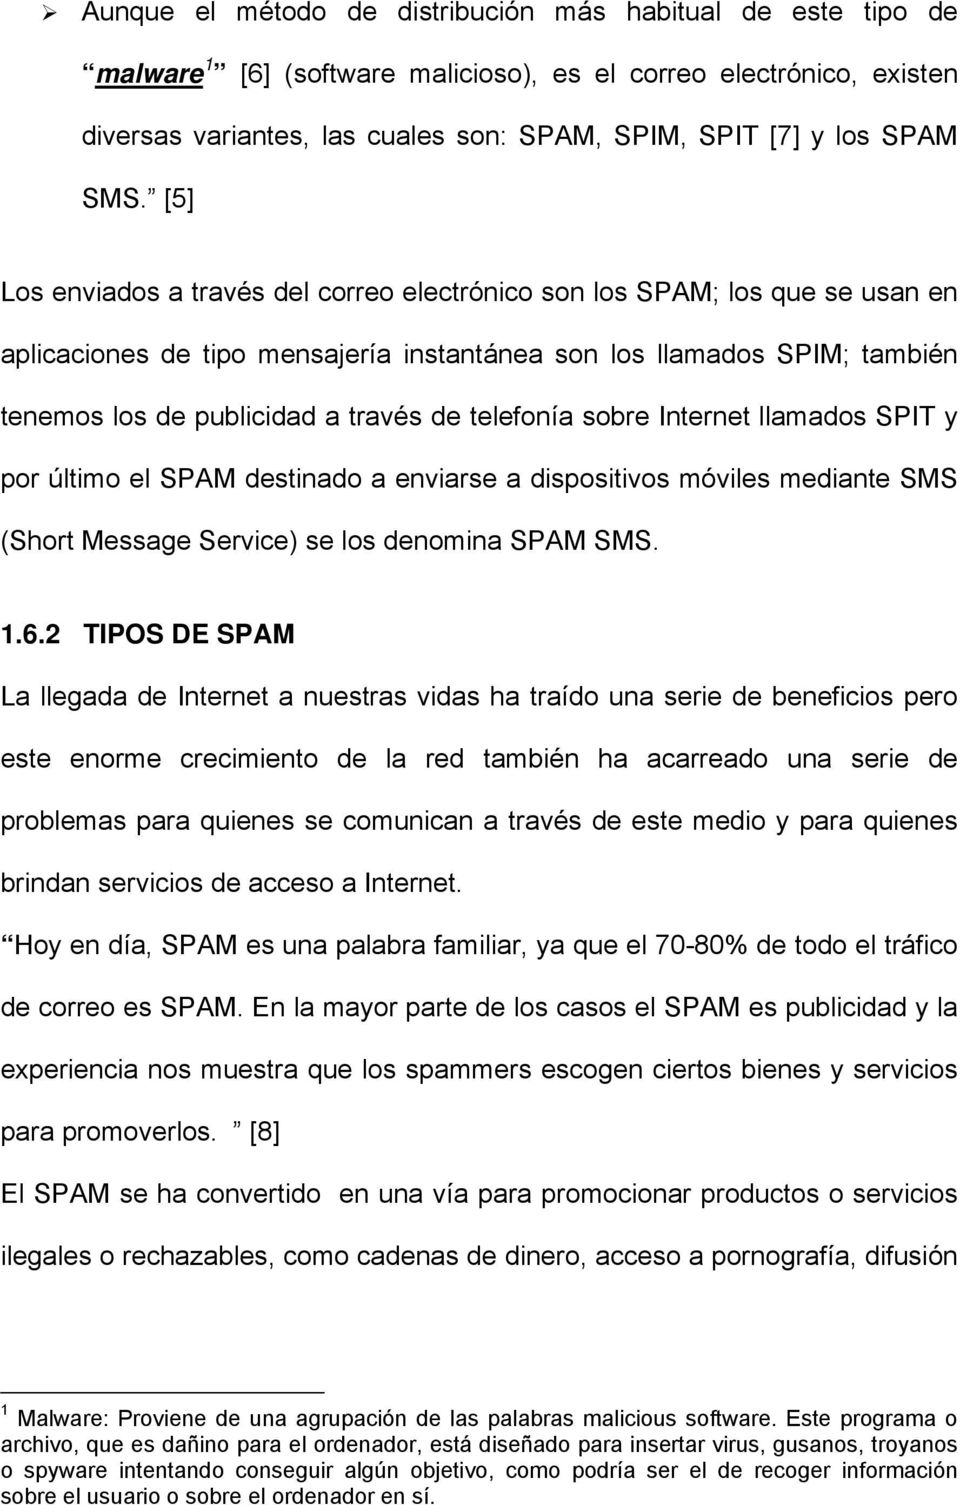 telefonía sobre Internet llamados SPIT y por último el SPAM destinado a enviarse a dispositivos móviles mediante SMS (Short Message Service) se los denomina SPAM SMS. 1.6.